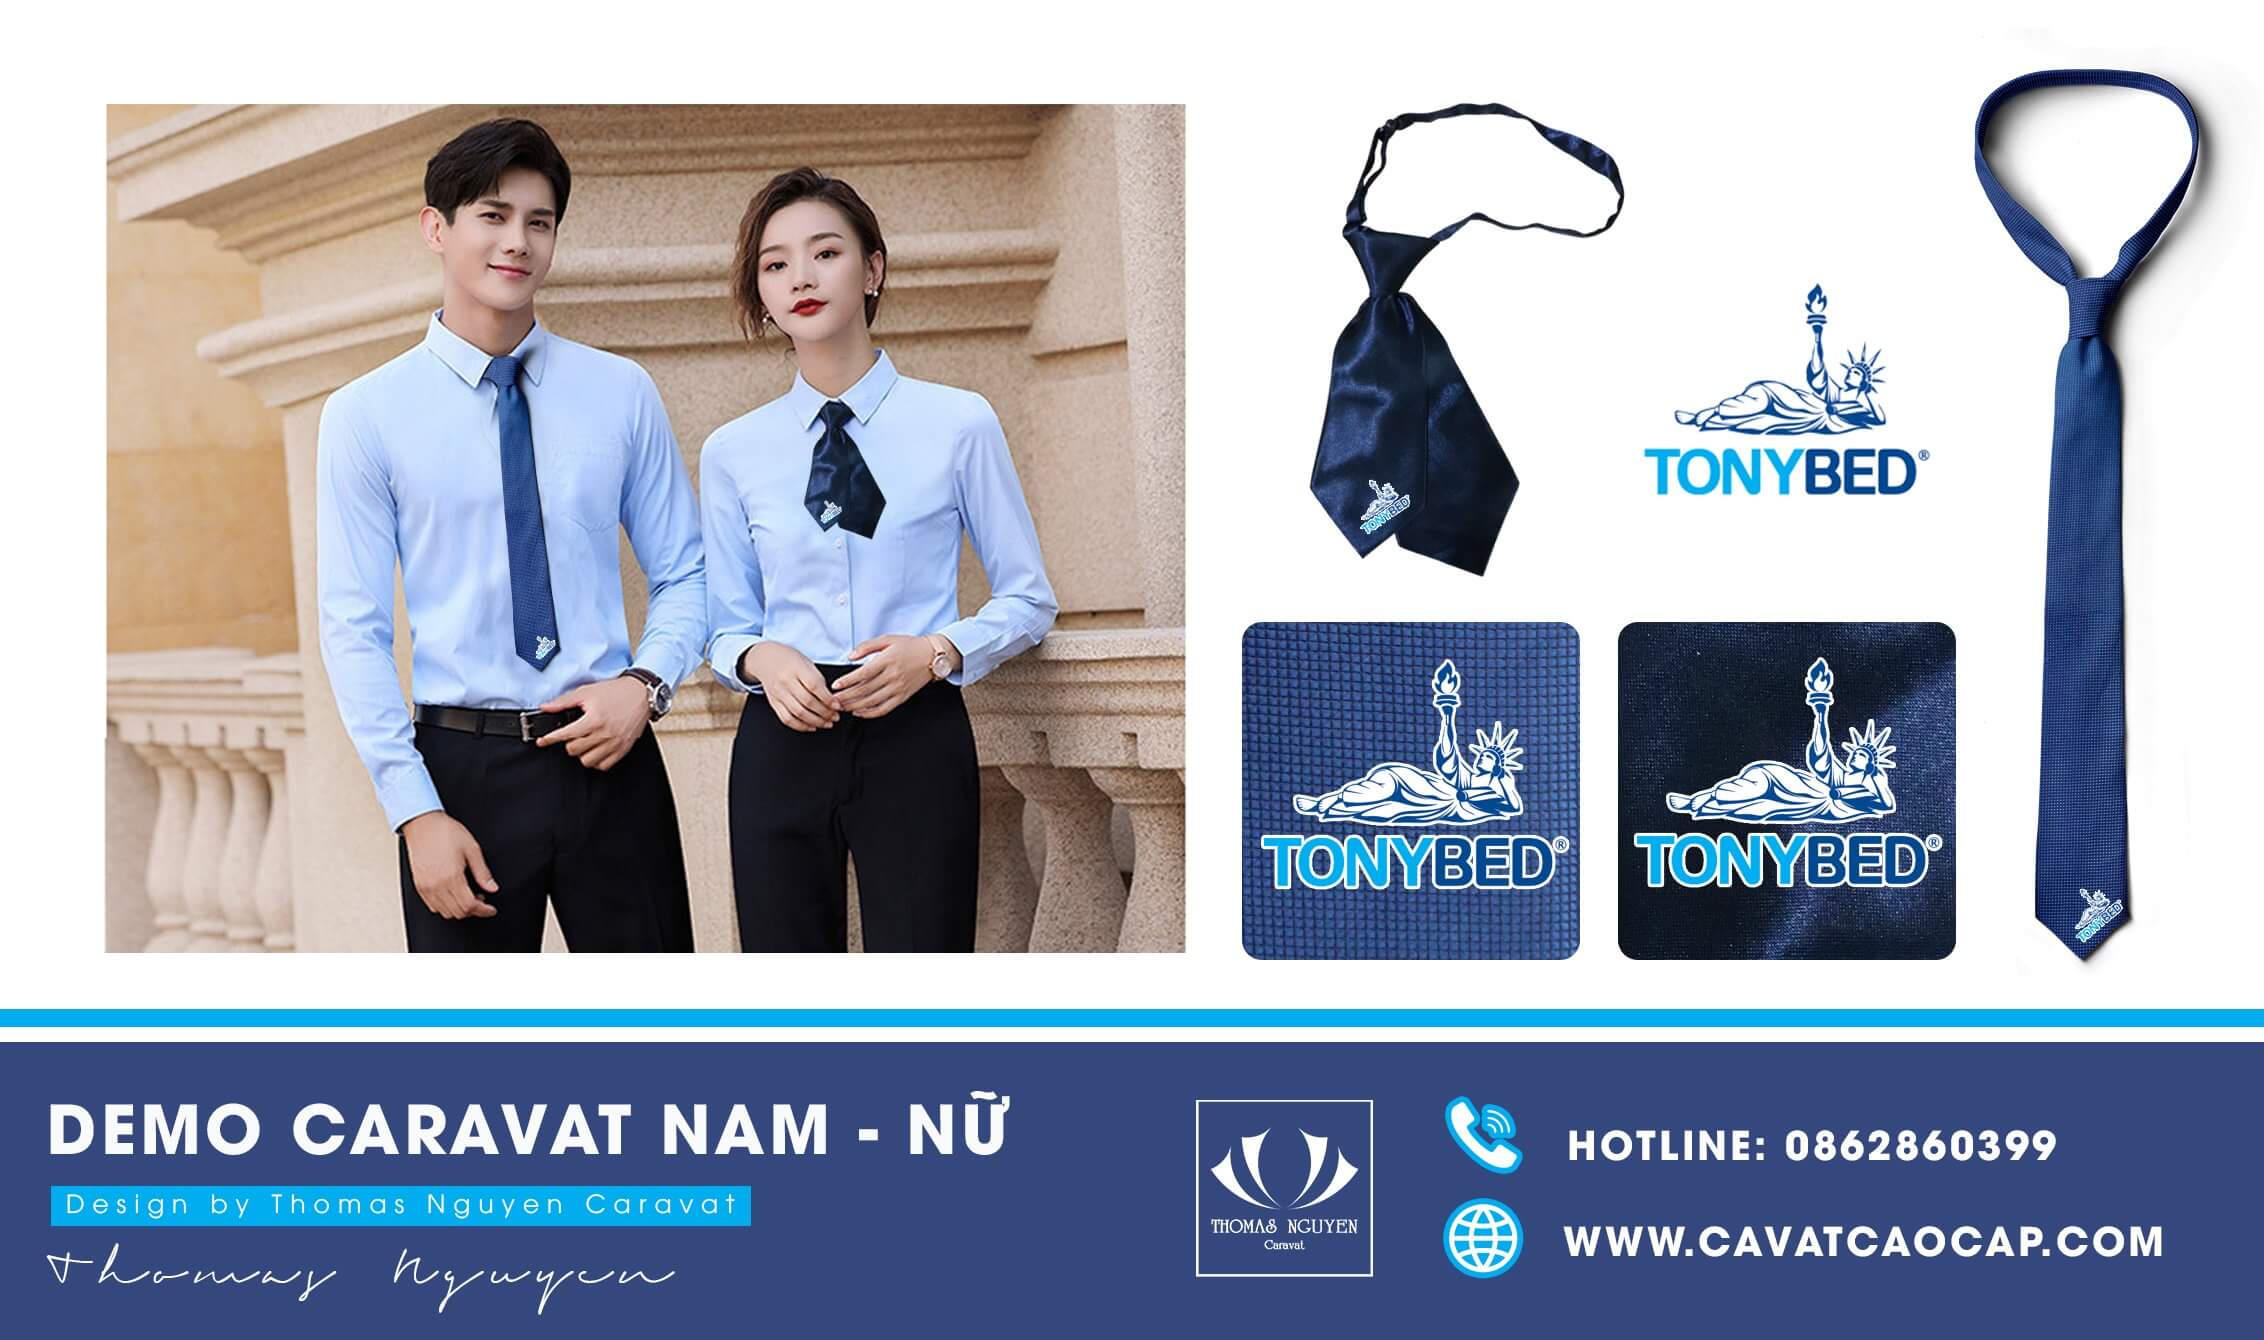 Bộ phụ kiện cà vạt & nơ đồng phục Tonybed thực hiện bởi Thomas Nguyen